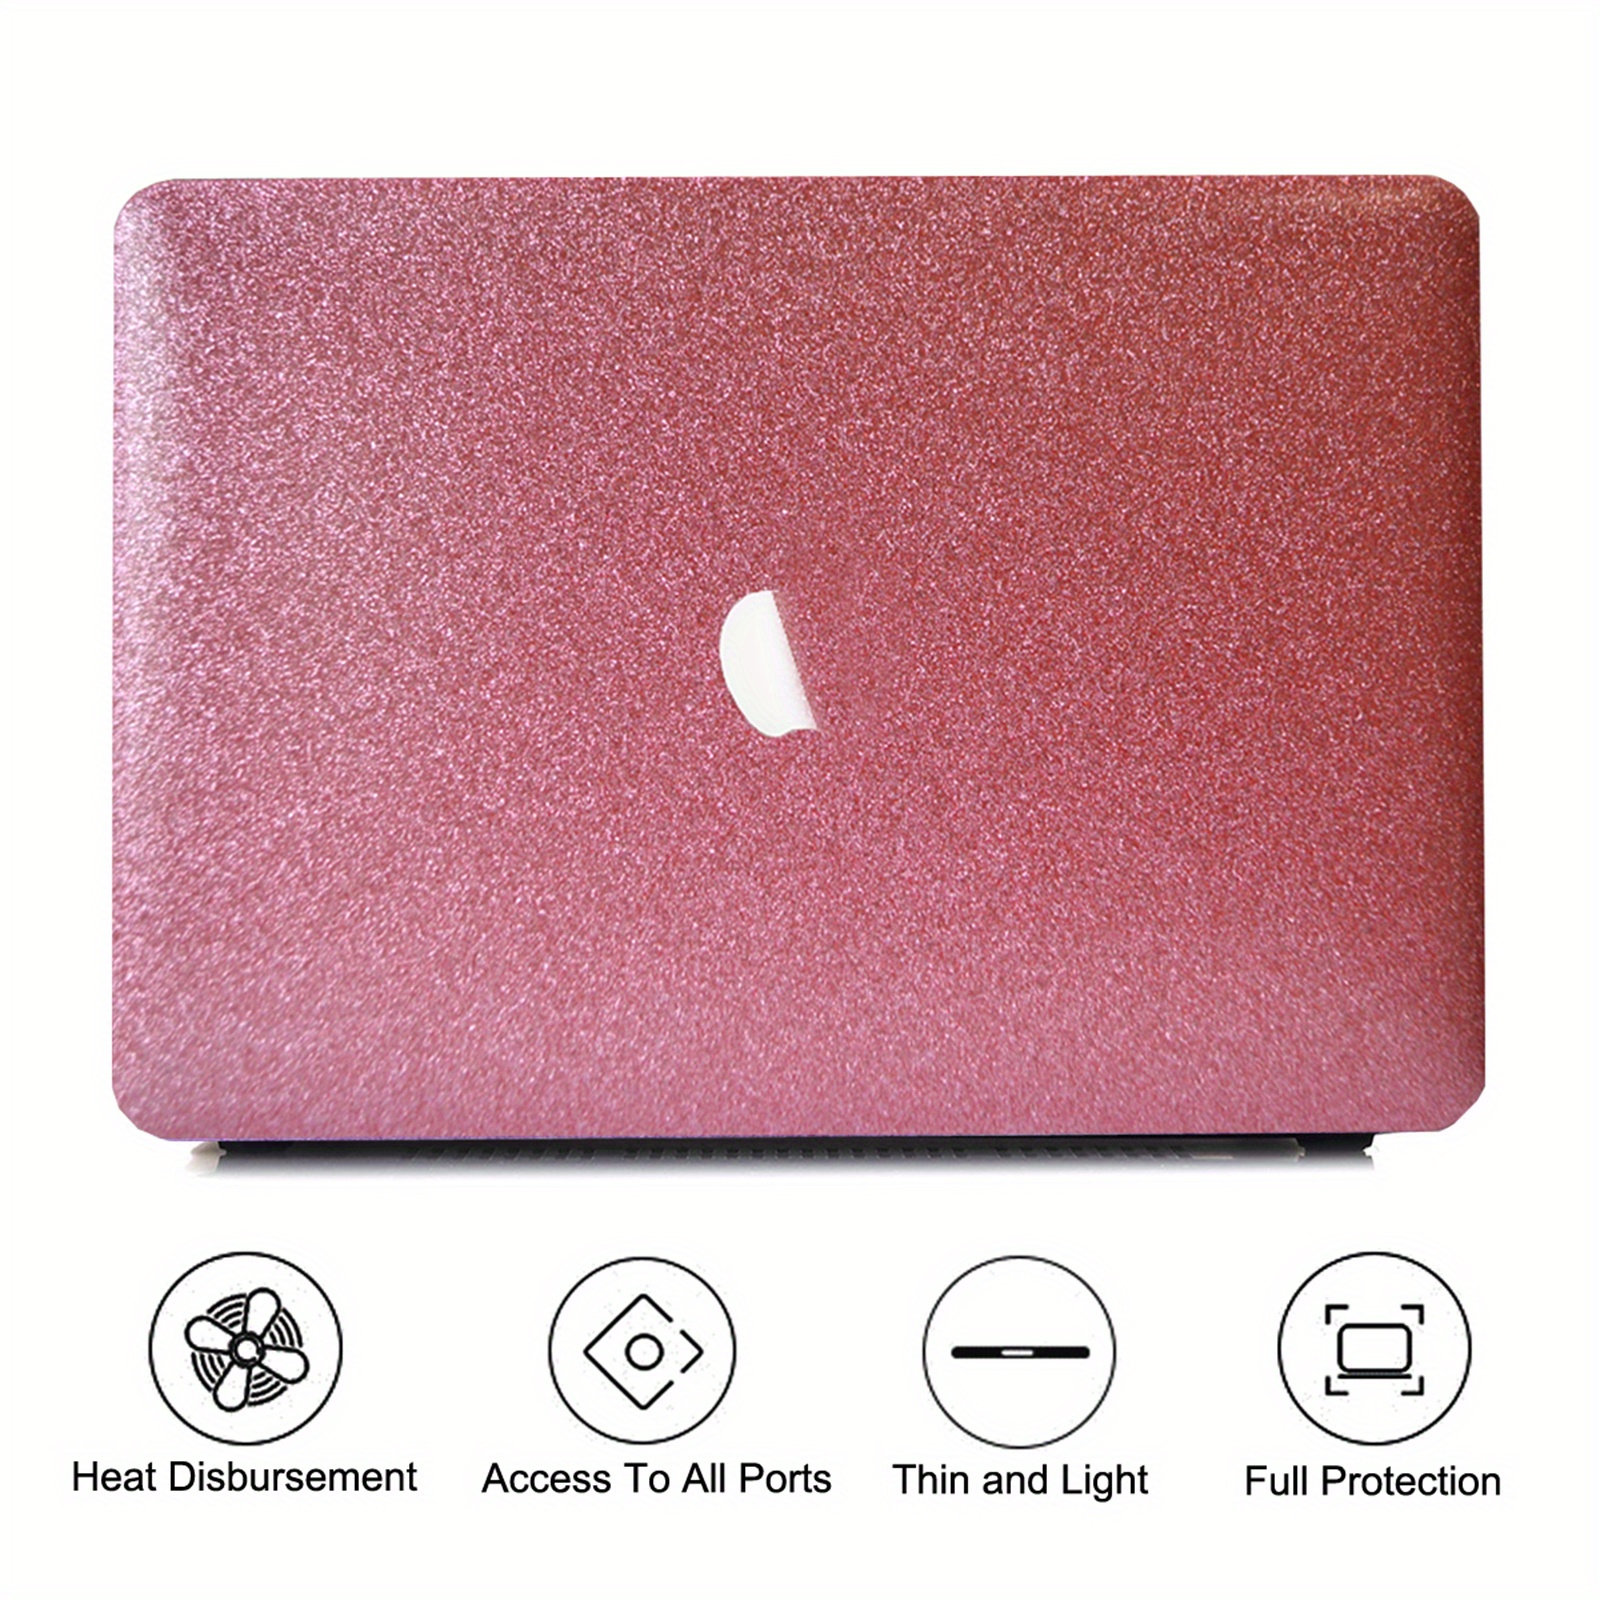 Coque de protection MacBook Air 13 A1369 et A1466 - Orange